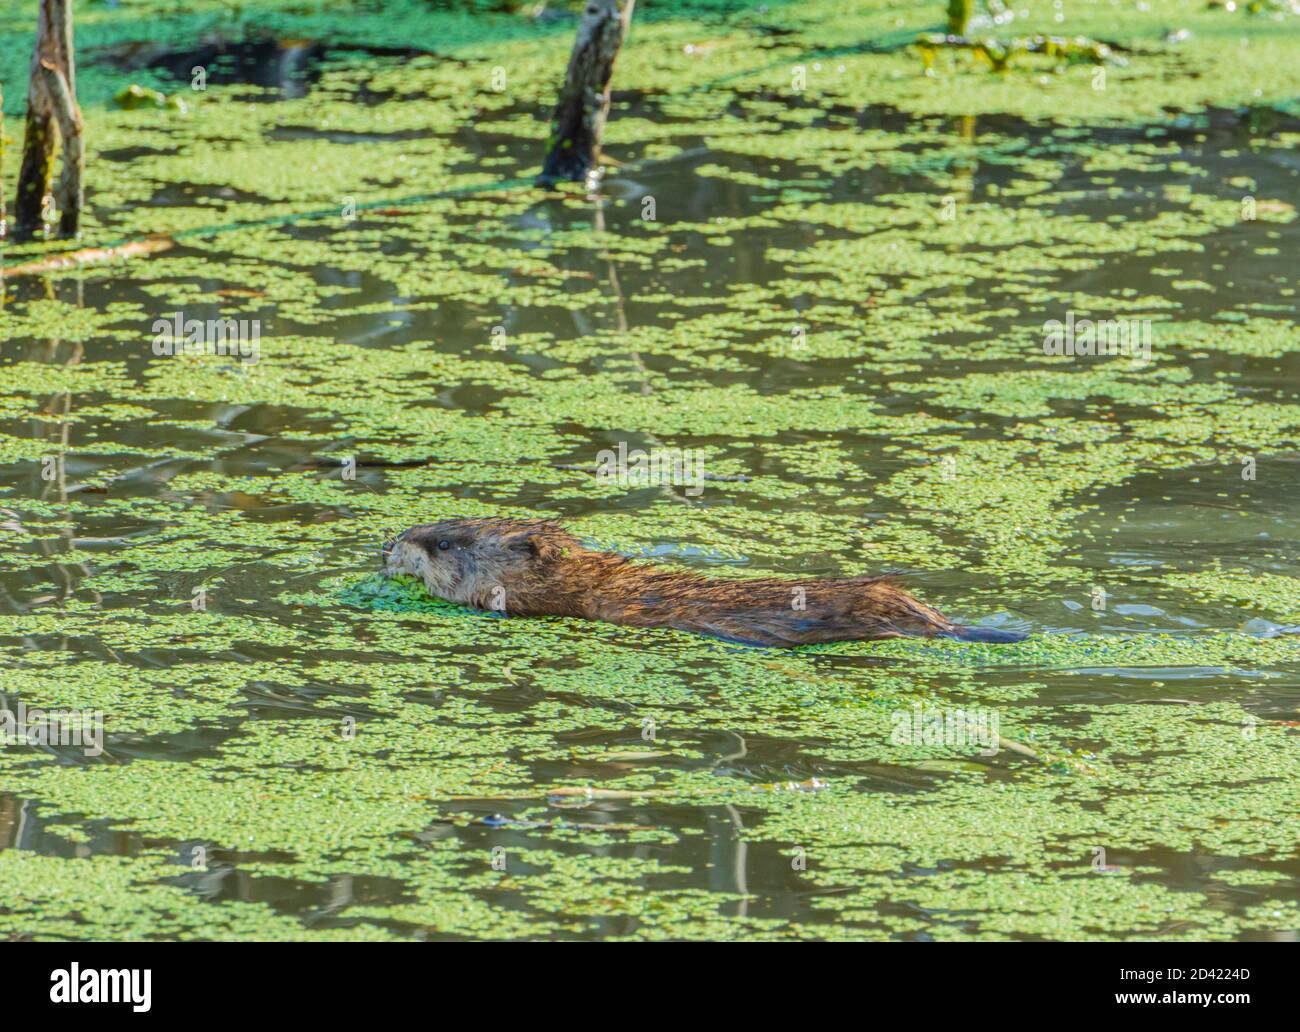 Bisamratschwimmen (Ondatra zibethicus) im Feuchtgebiet Biberteich unter grünen Entenklau auf Teichoberfläche, Castle Rock Colorado USA. Foto aufgenommen im Oktober 2020. Stockfoto